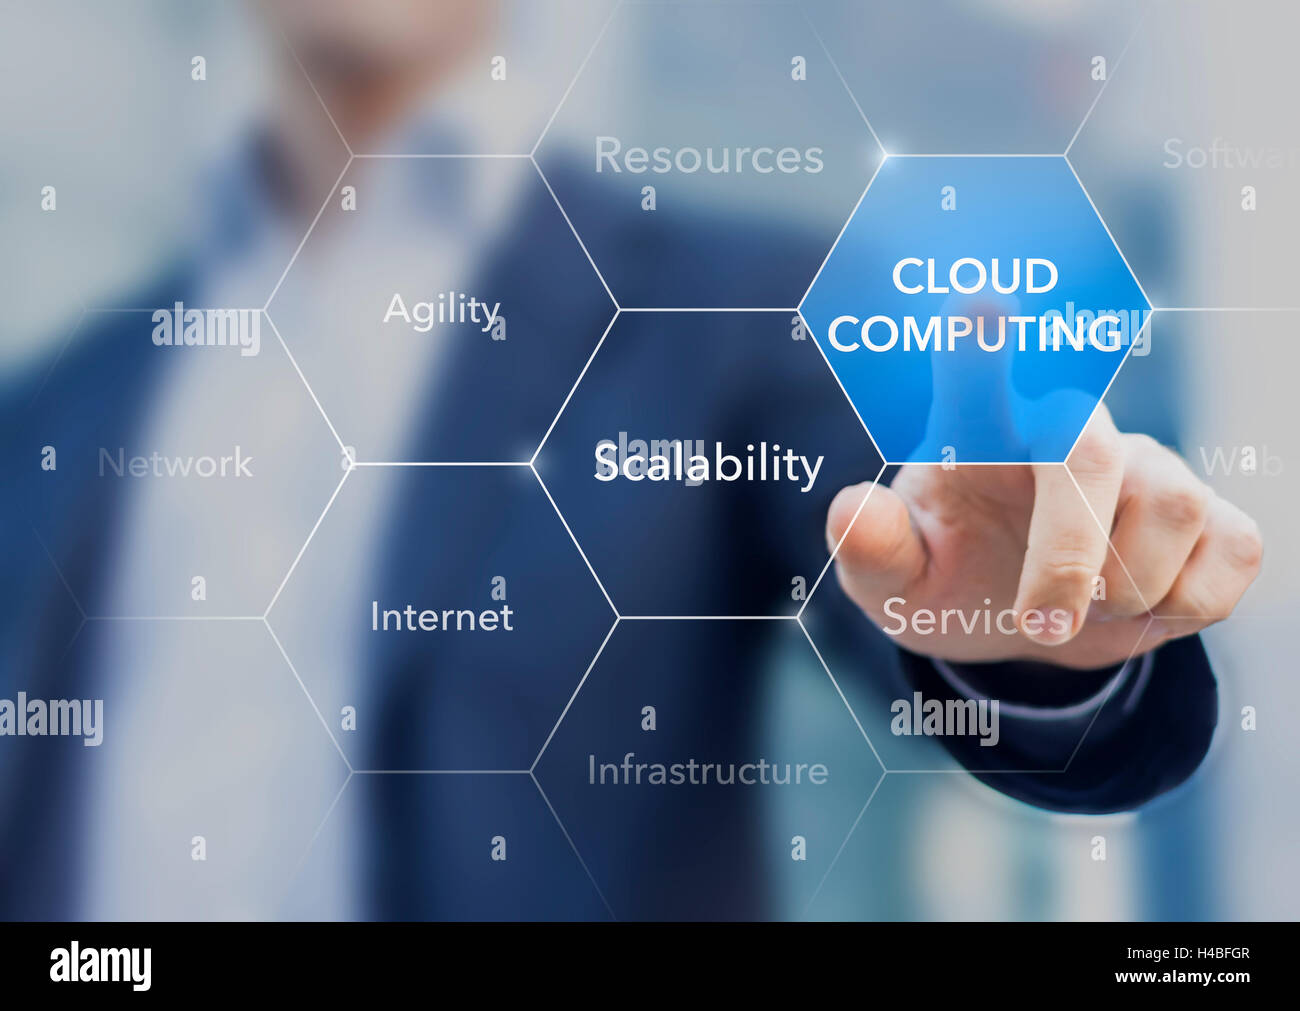 La promotion de l'expert-conseil des ressources et des services de cloud computing Banque D'Images